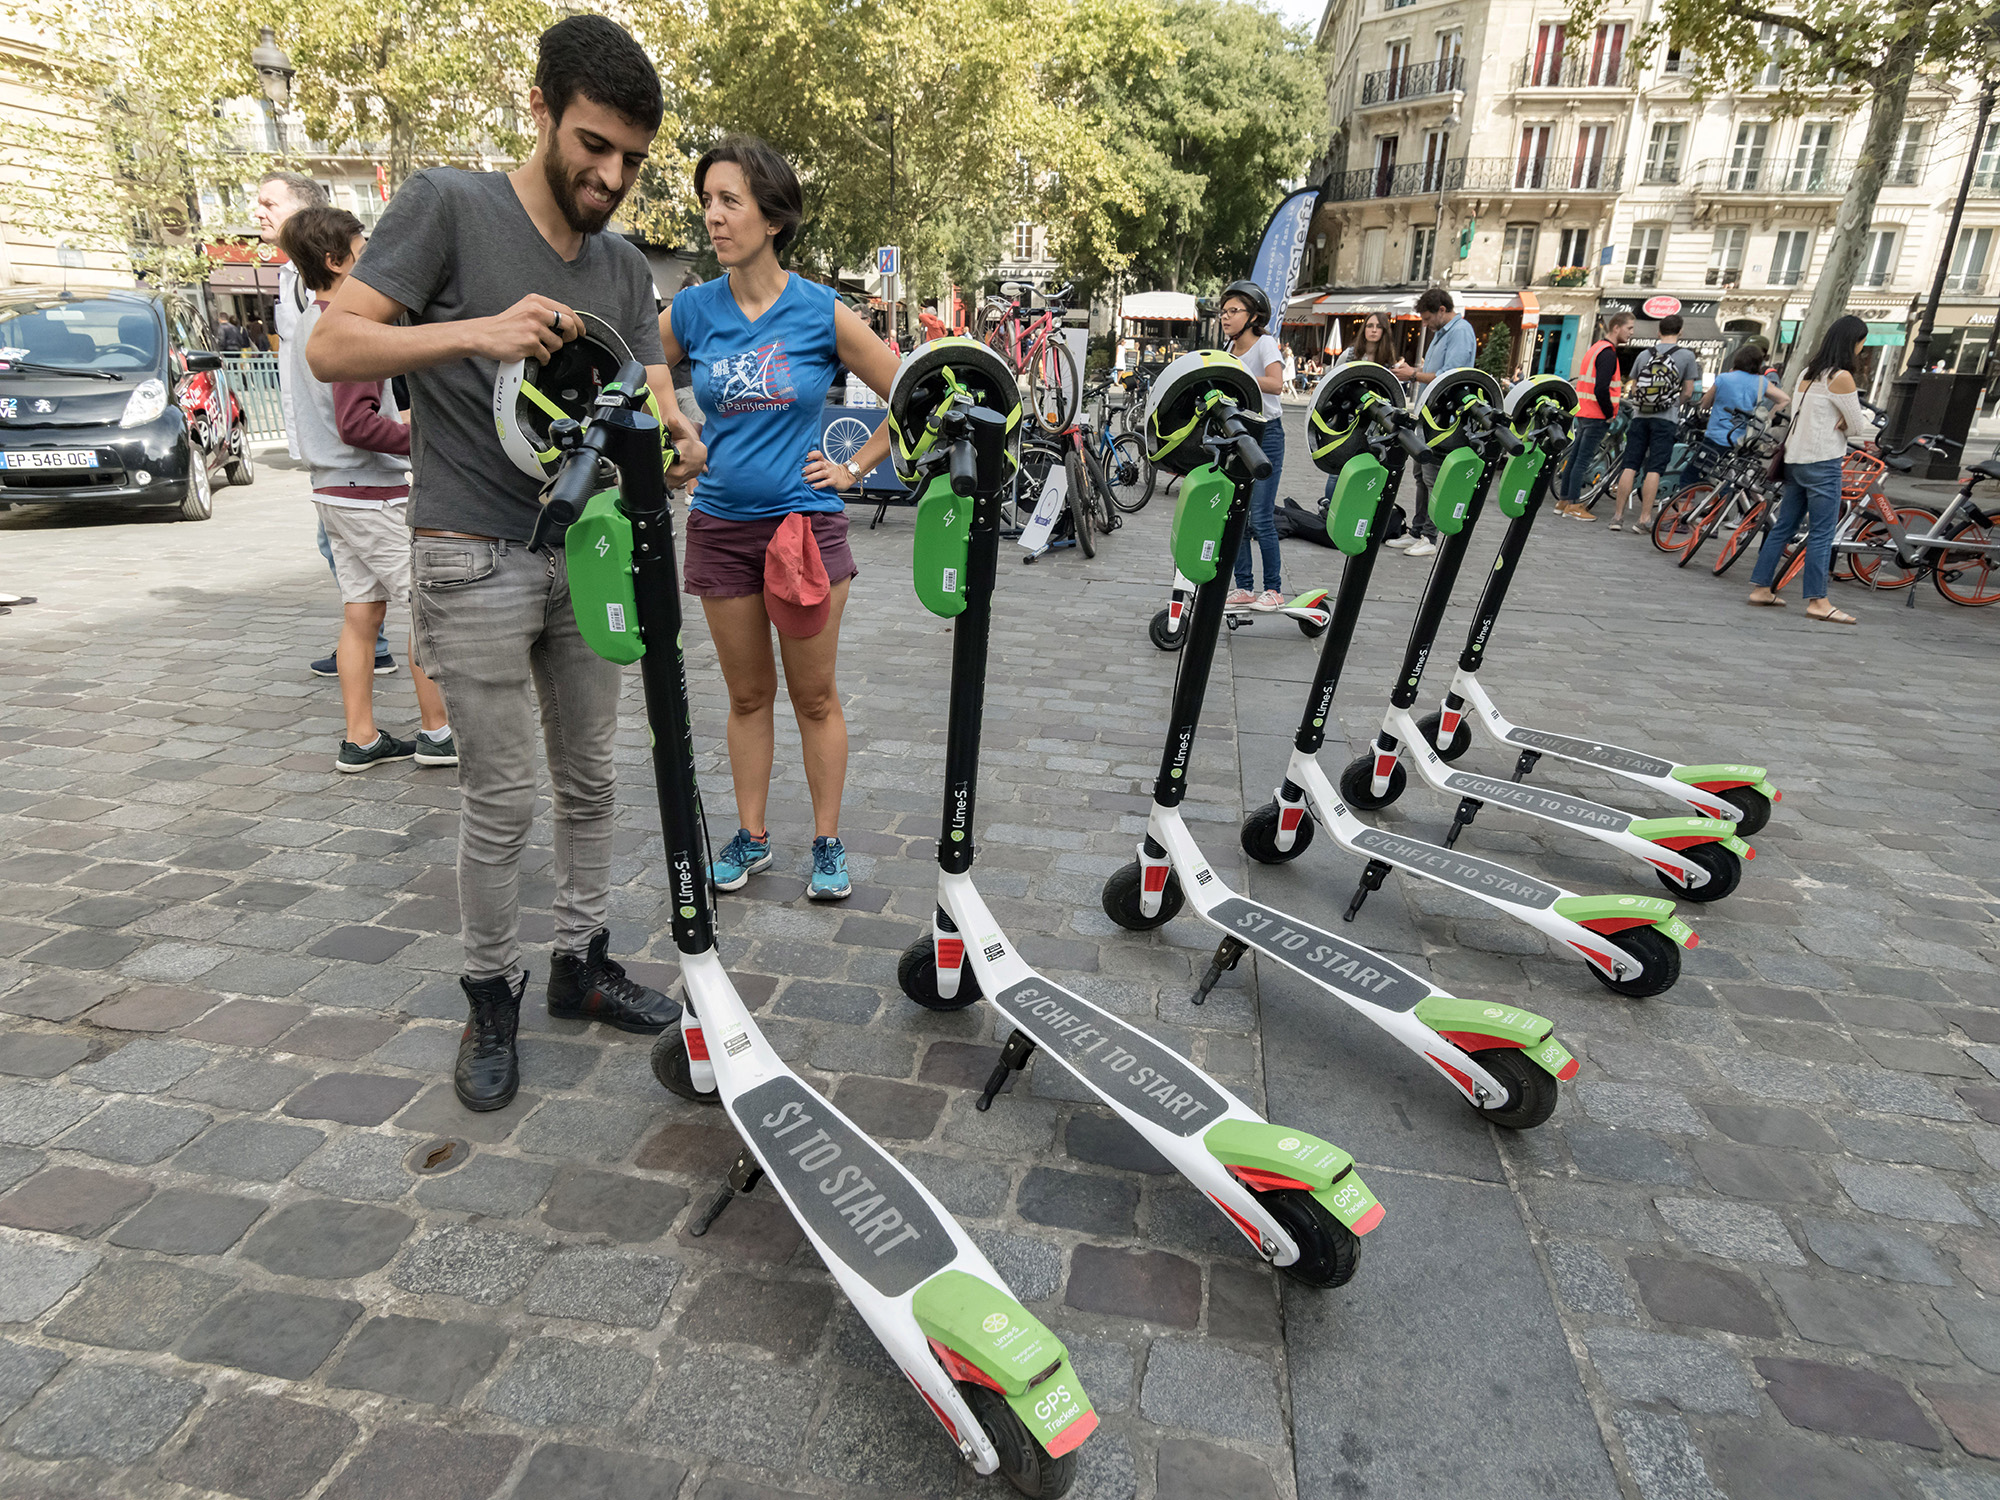 Vélos, trottinettes et scooters: les nouvelles mobilités à l'arrêt